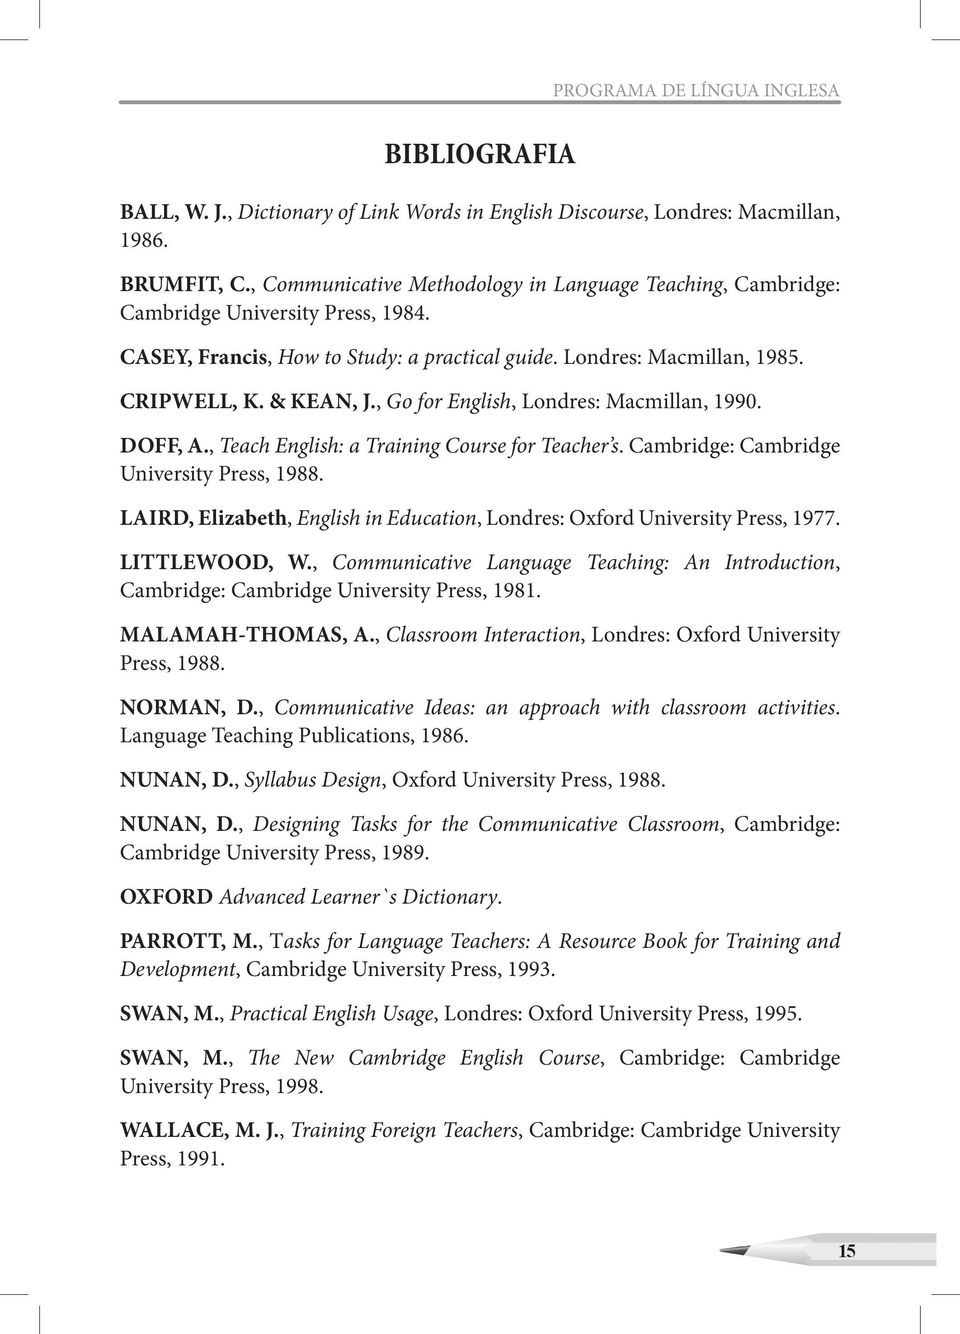 , Go for English, Londres: Macmillan, 1990. DOFF, A., Teach English: a Training Course for Teacher s. Cambridge: Cambridge University Press, 1988.